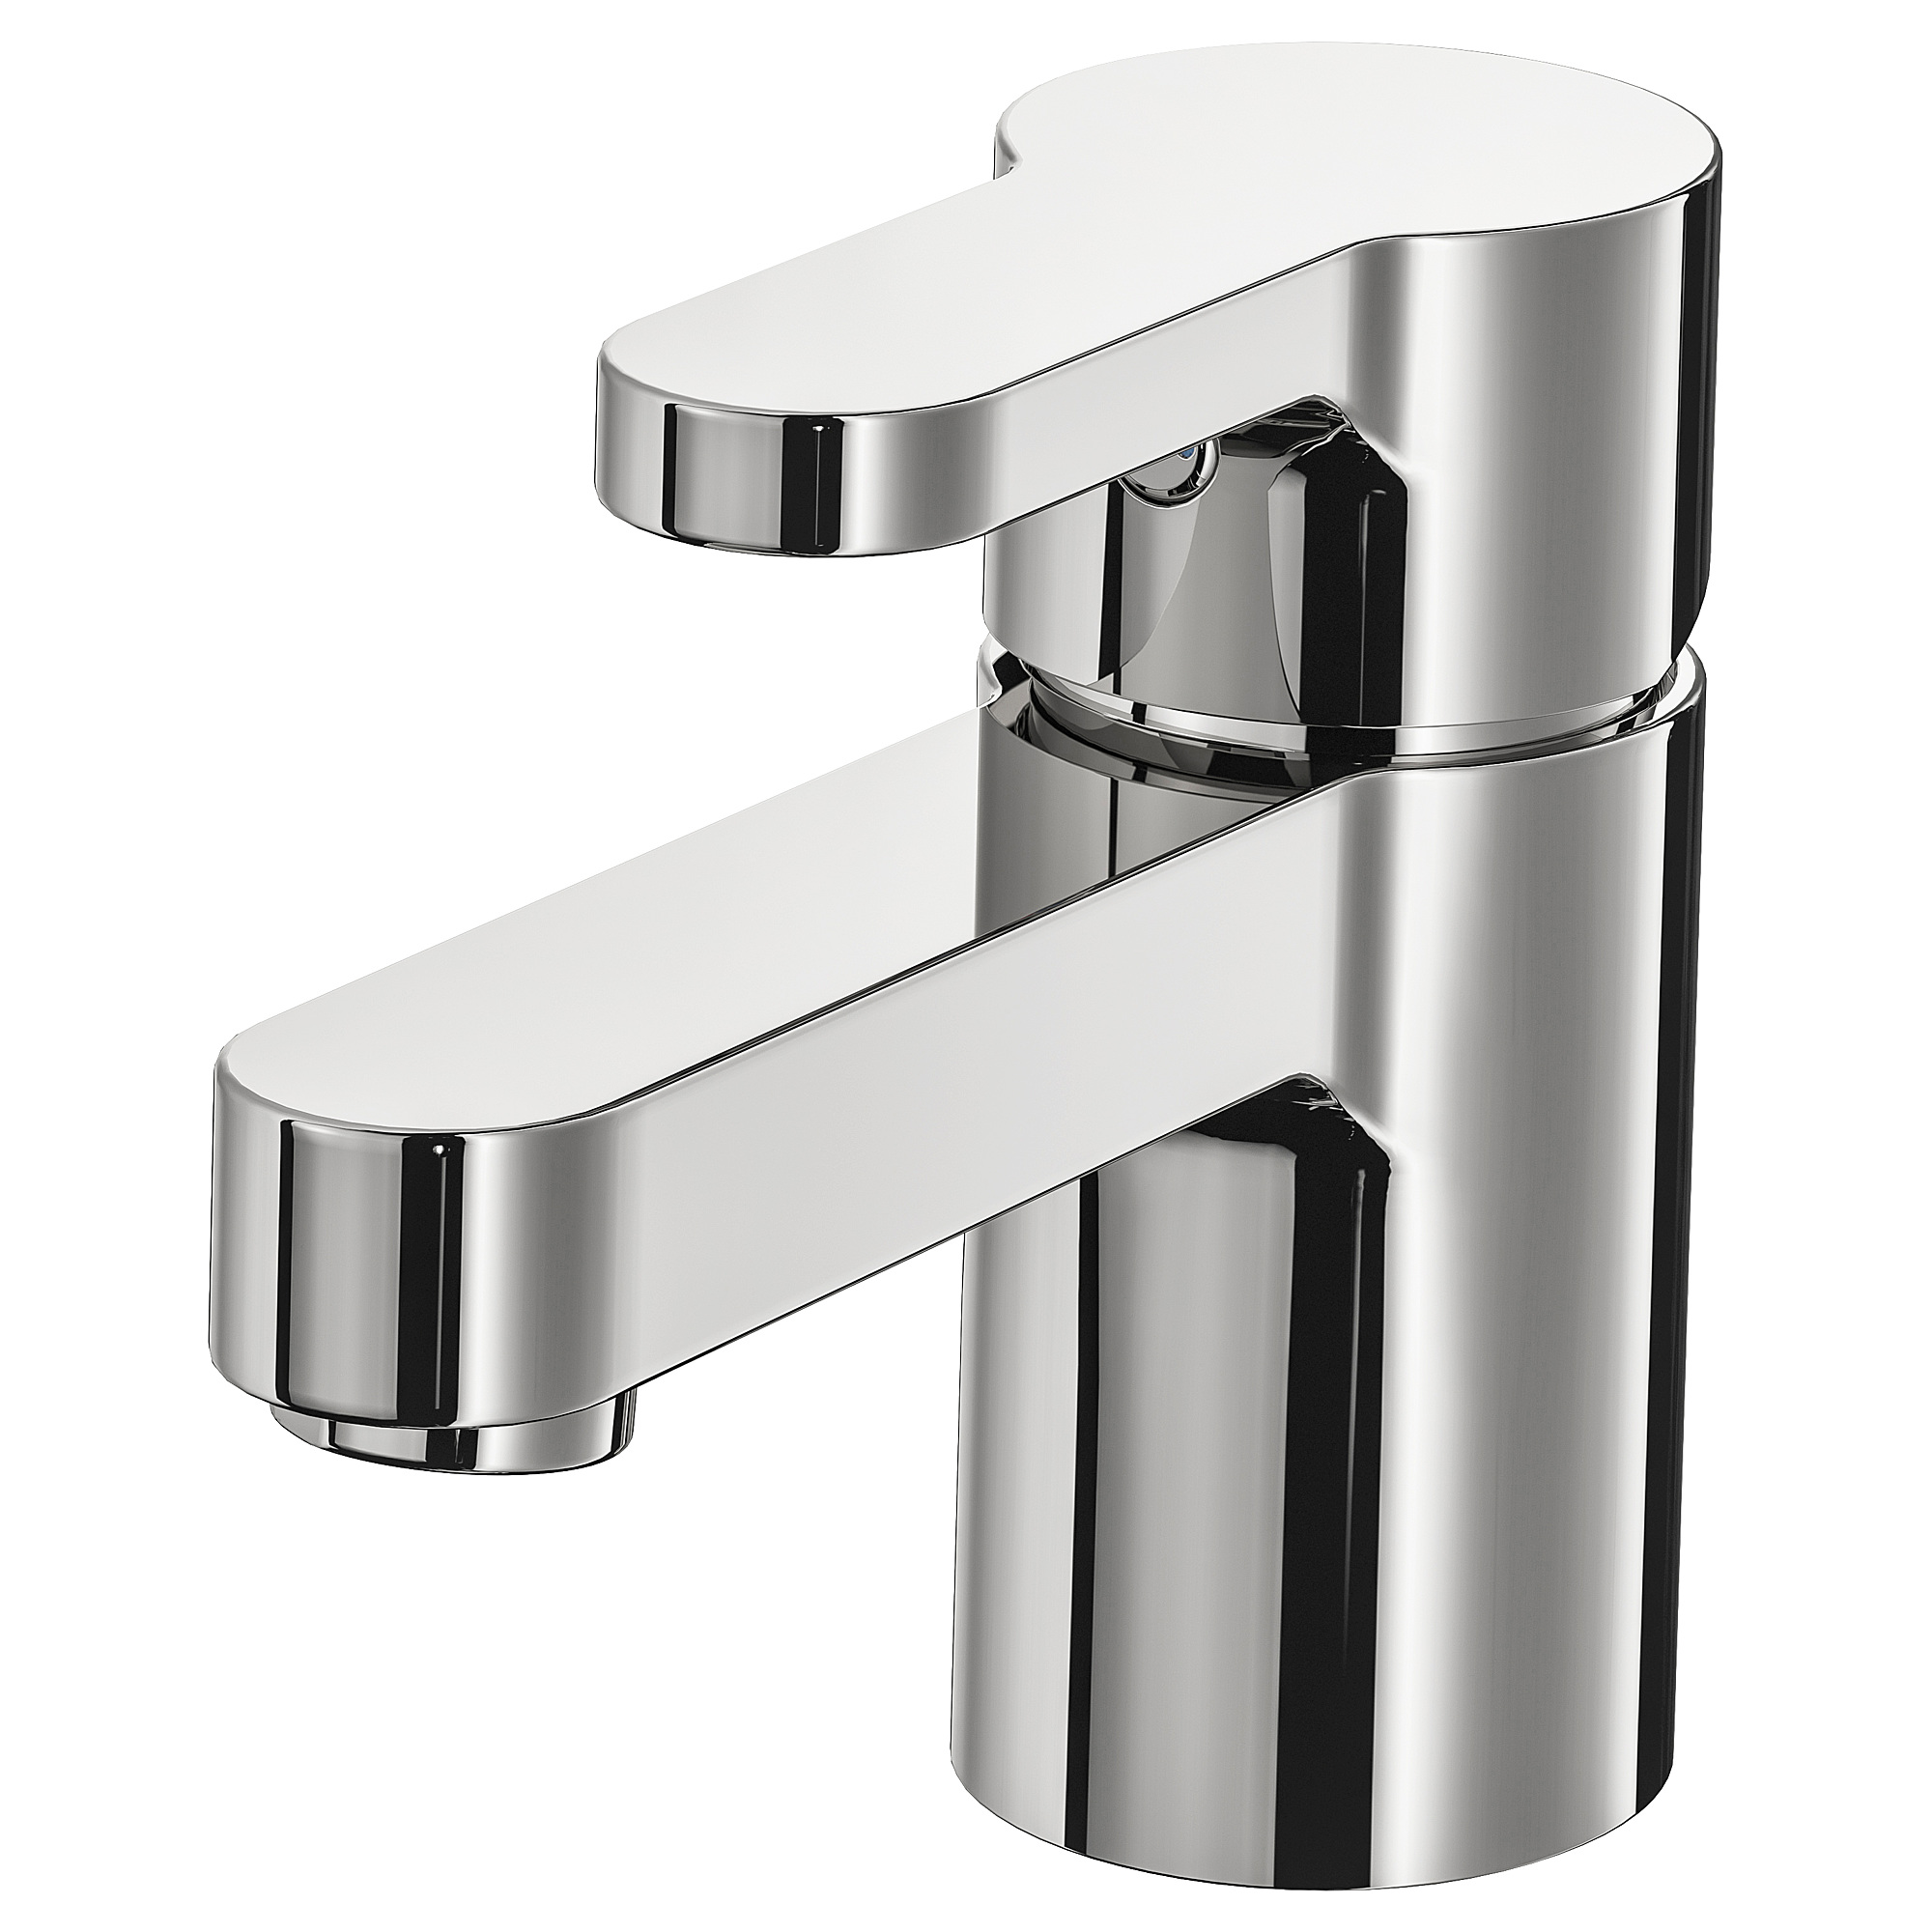 ENSEN wash-basin mixer tap with strainer